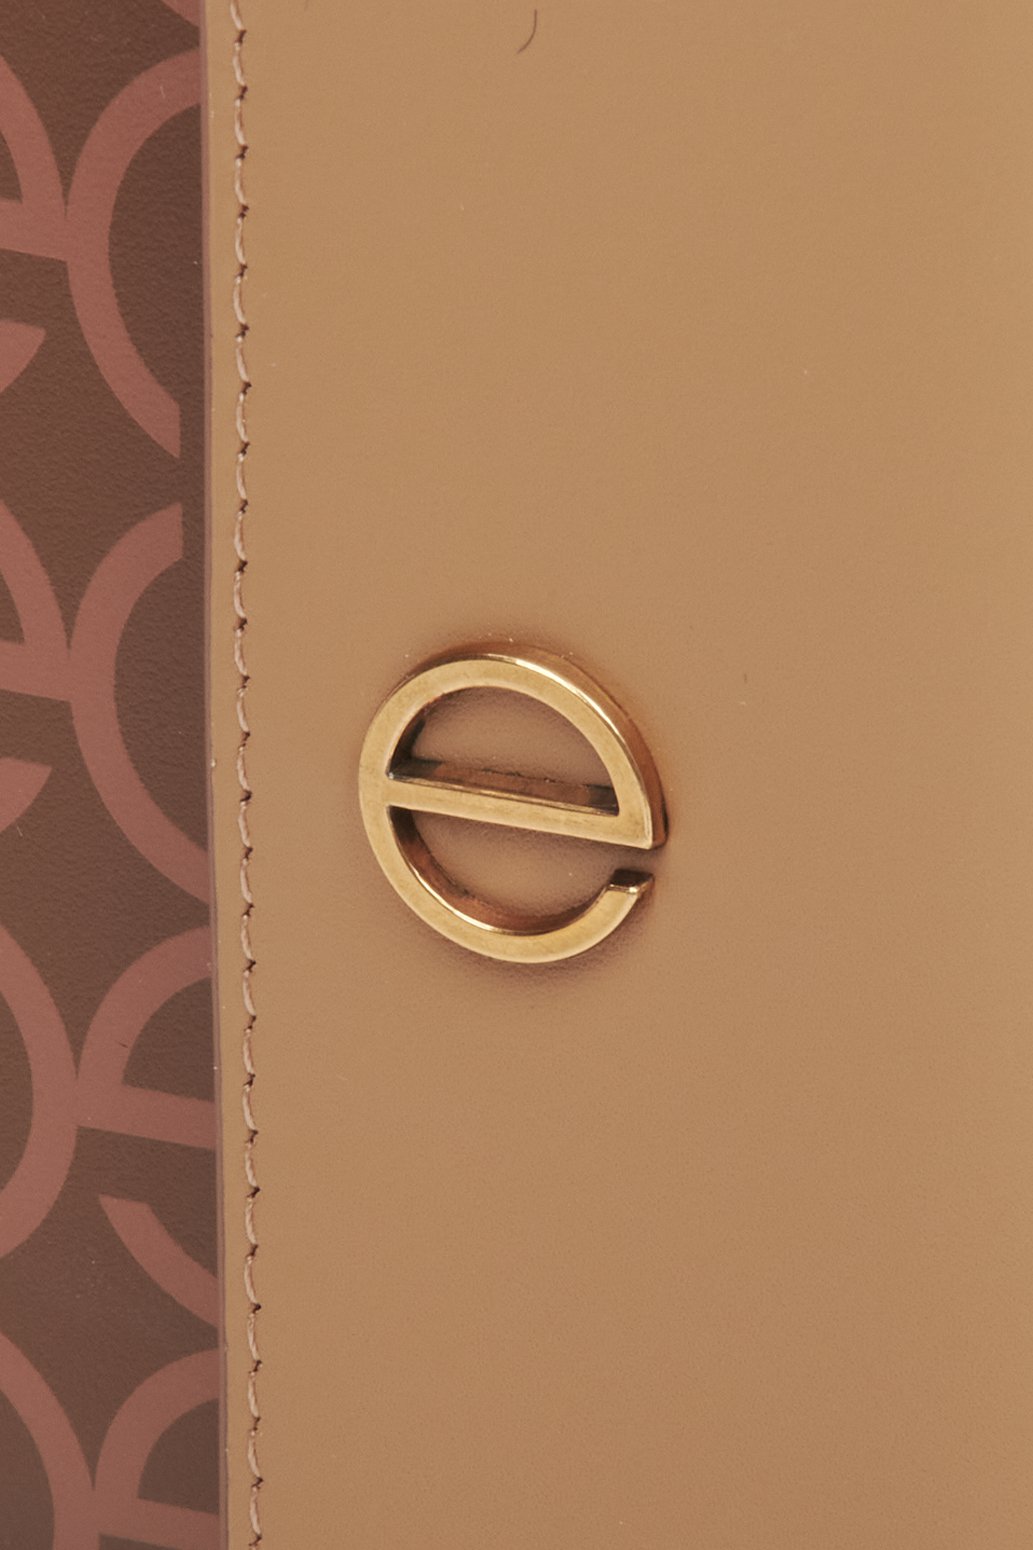 Skórzany portfel damski w kolorze brązowym ze srebrnymi okuciami marki Estro - zbliżenie na emblemat.